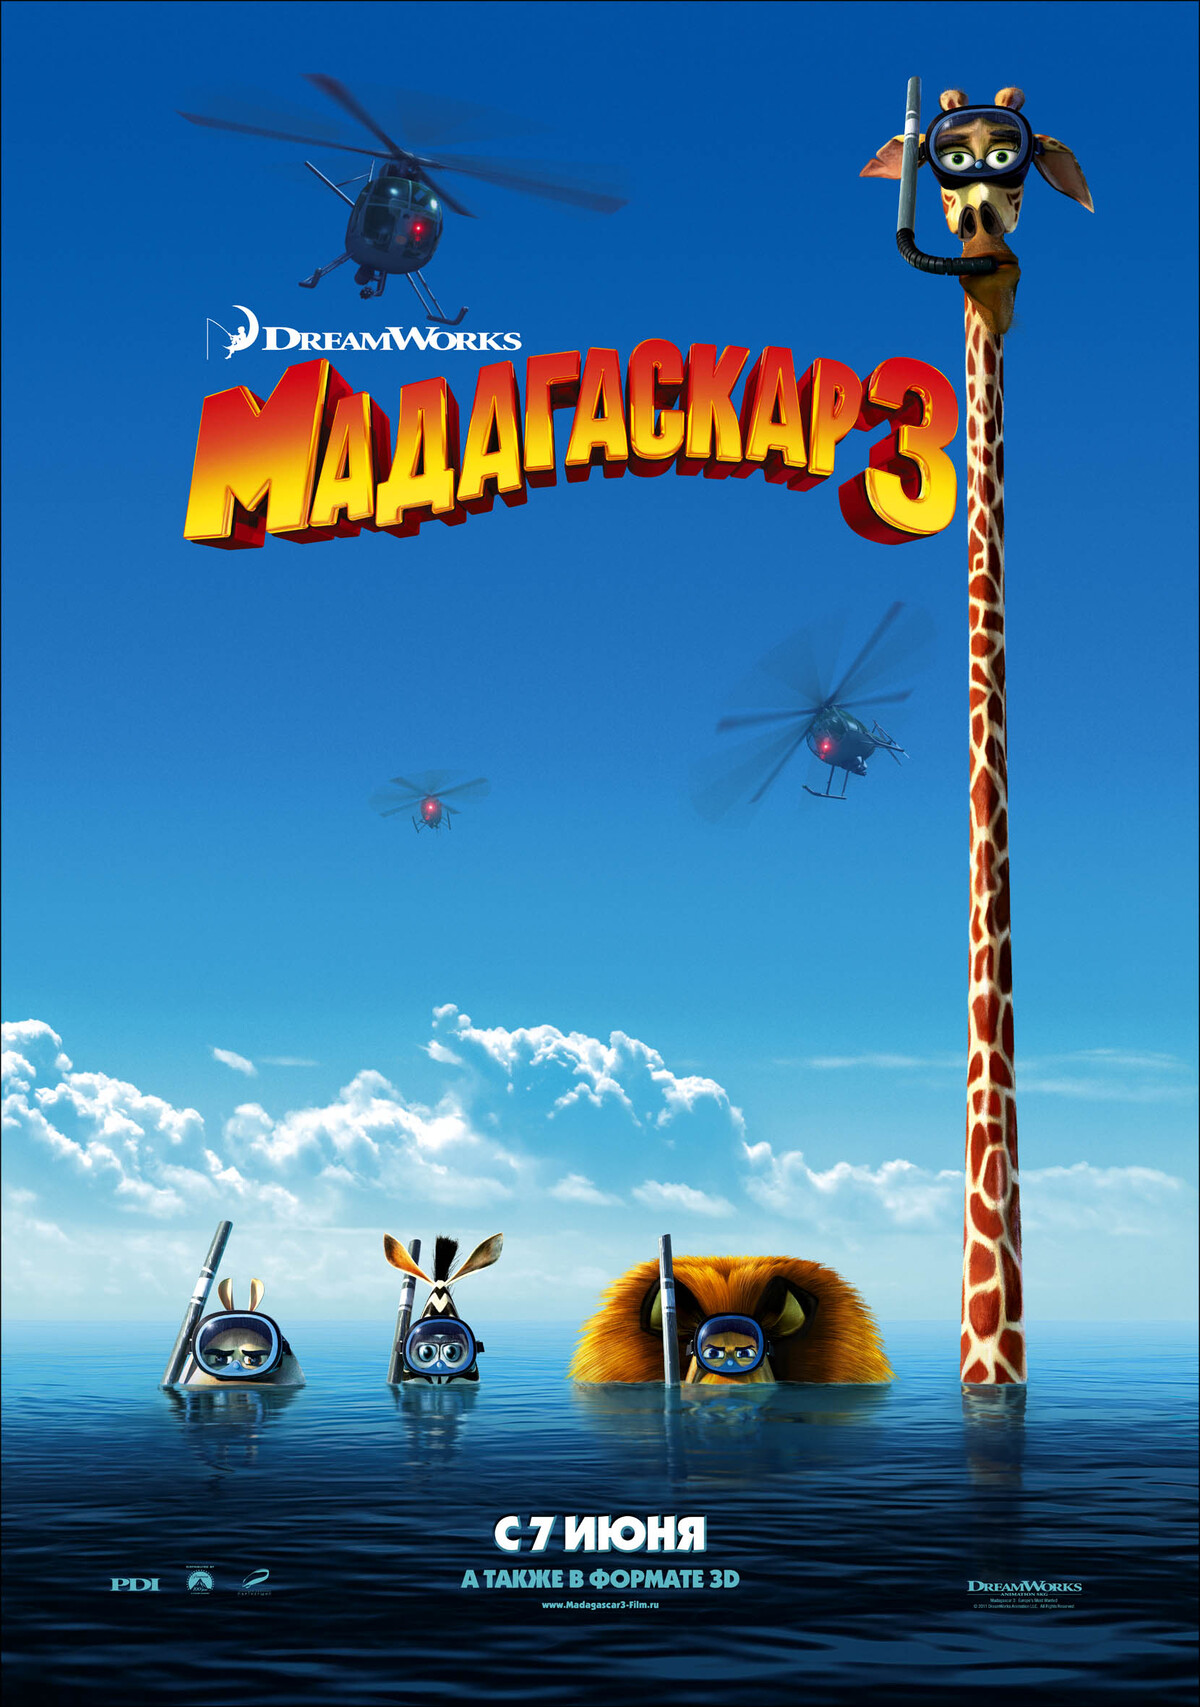 Второй дублированный трейлер мультфильма "Мадагаскар 3 в 3D"